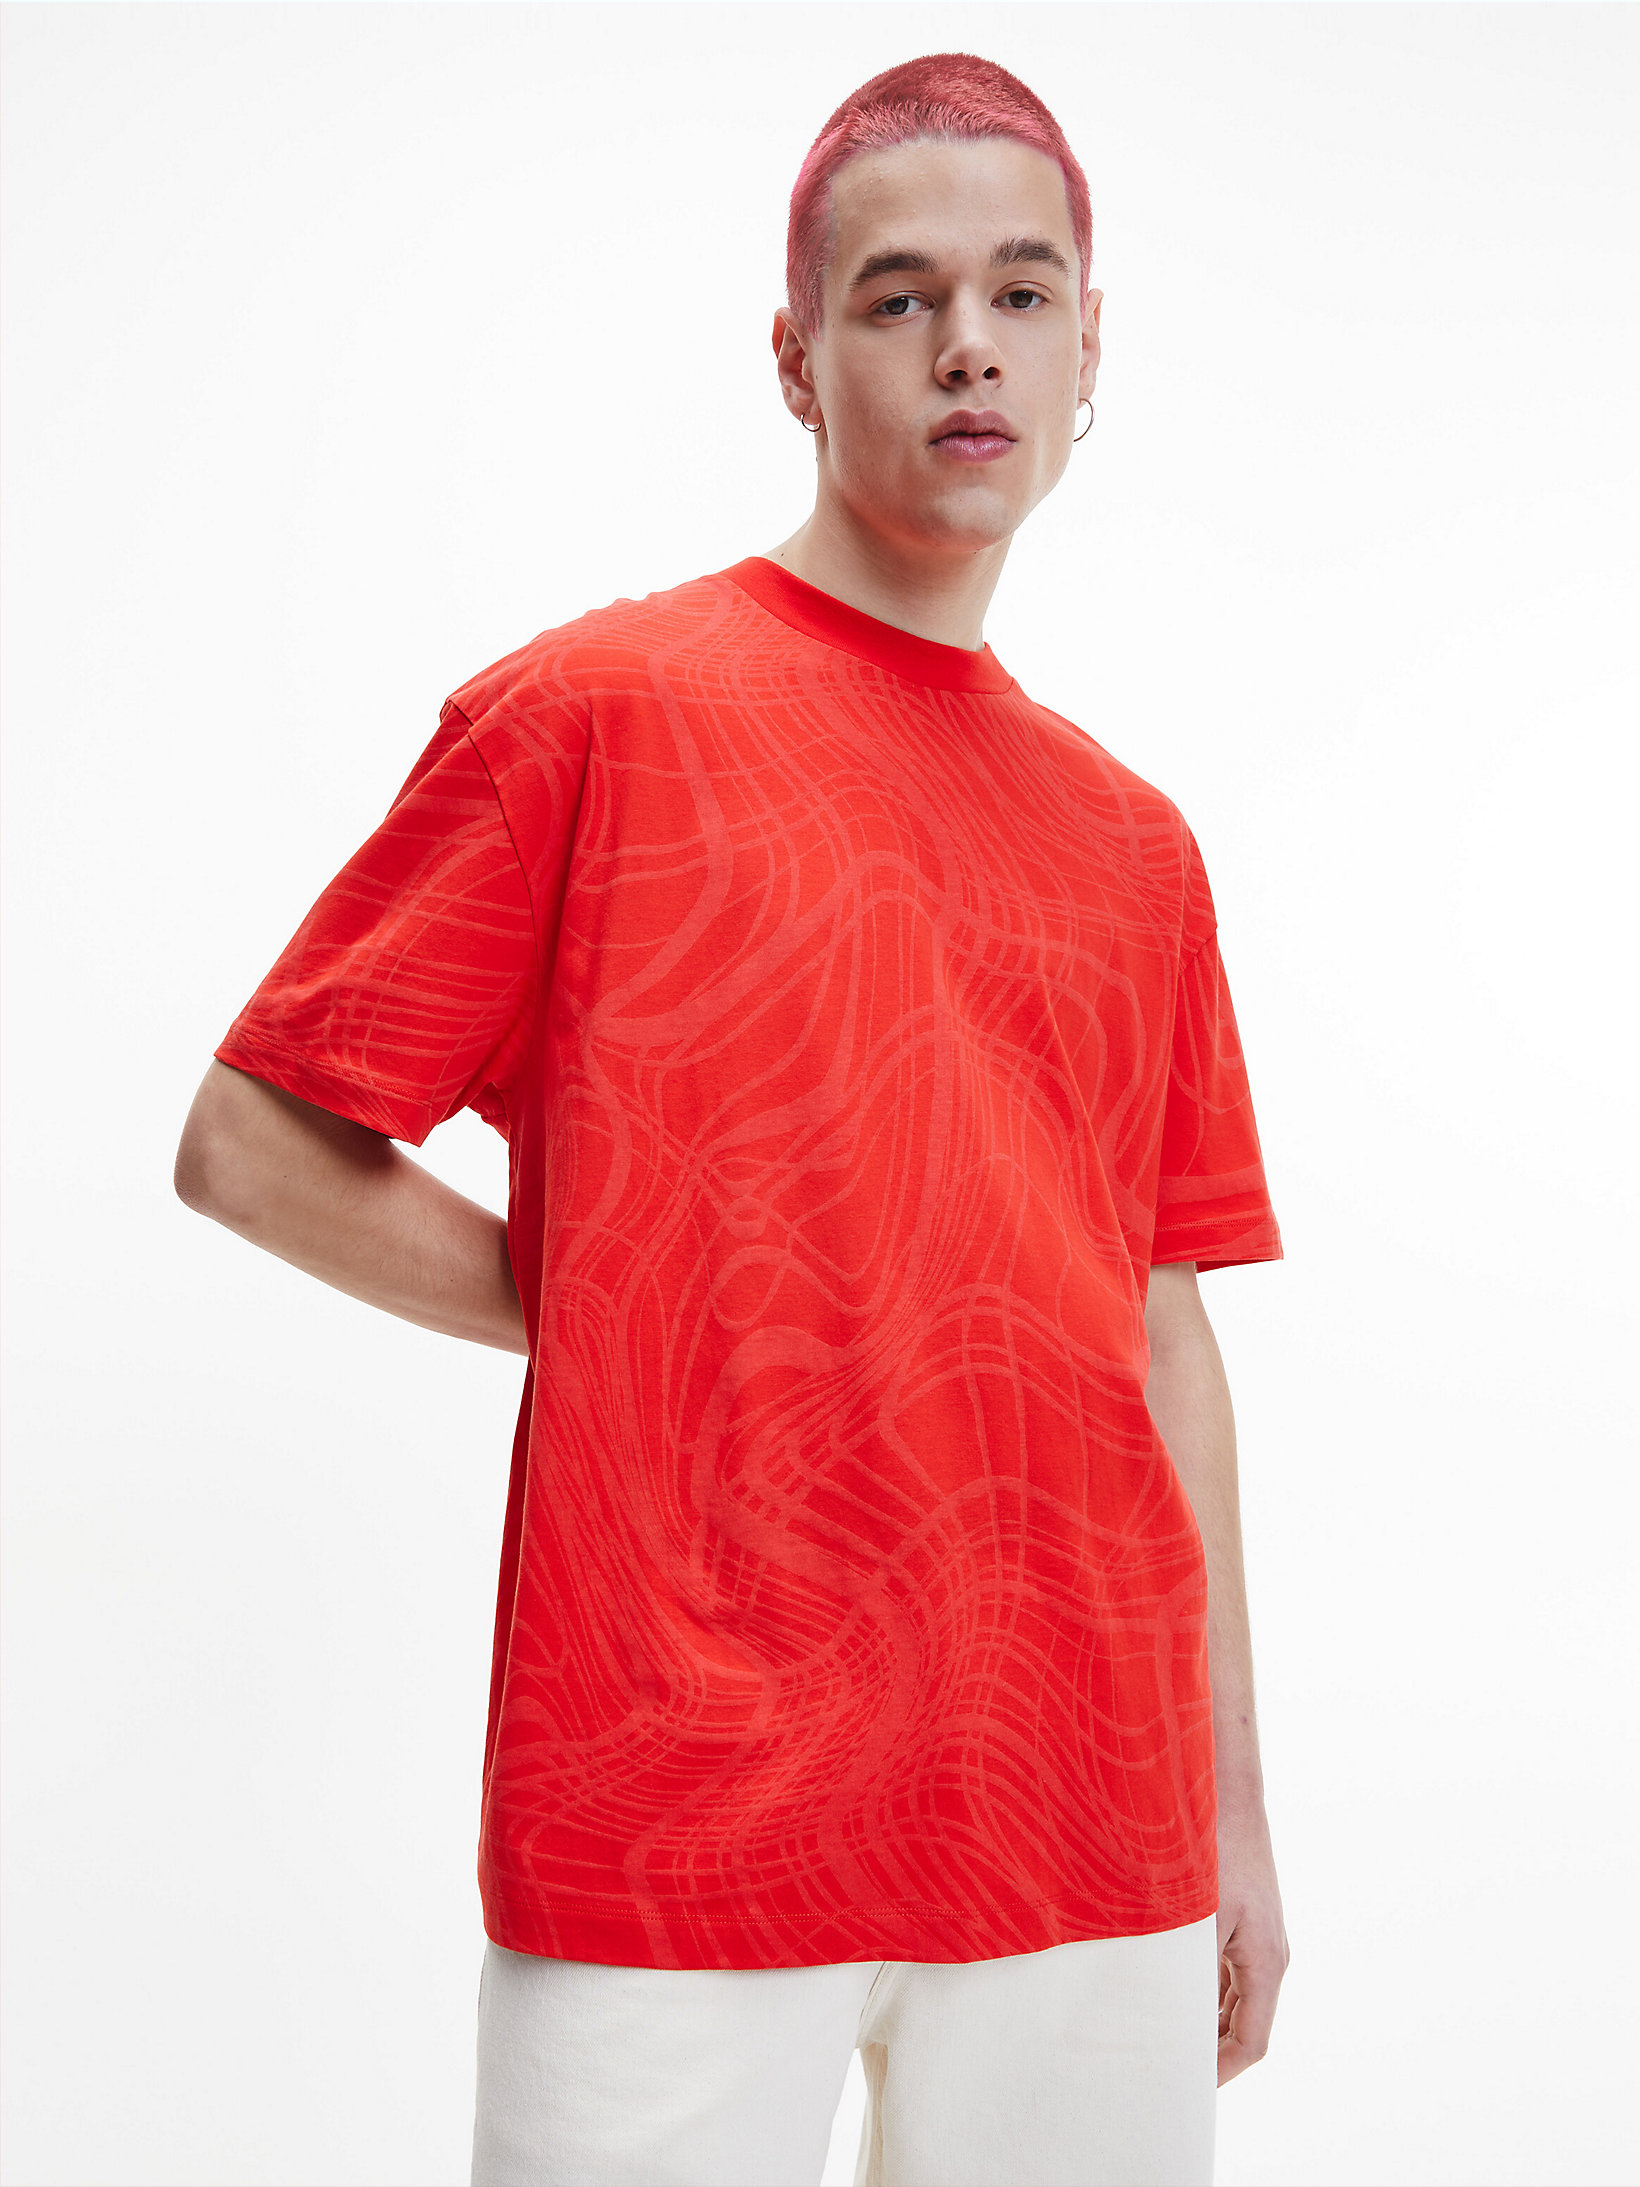 Fierce Red > Габаритная футболка унисекс с принтом - CK One > undefined unisex - Calvin Klein